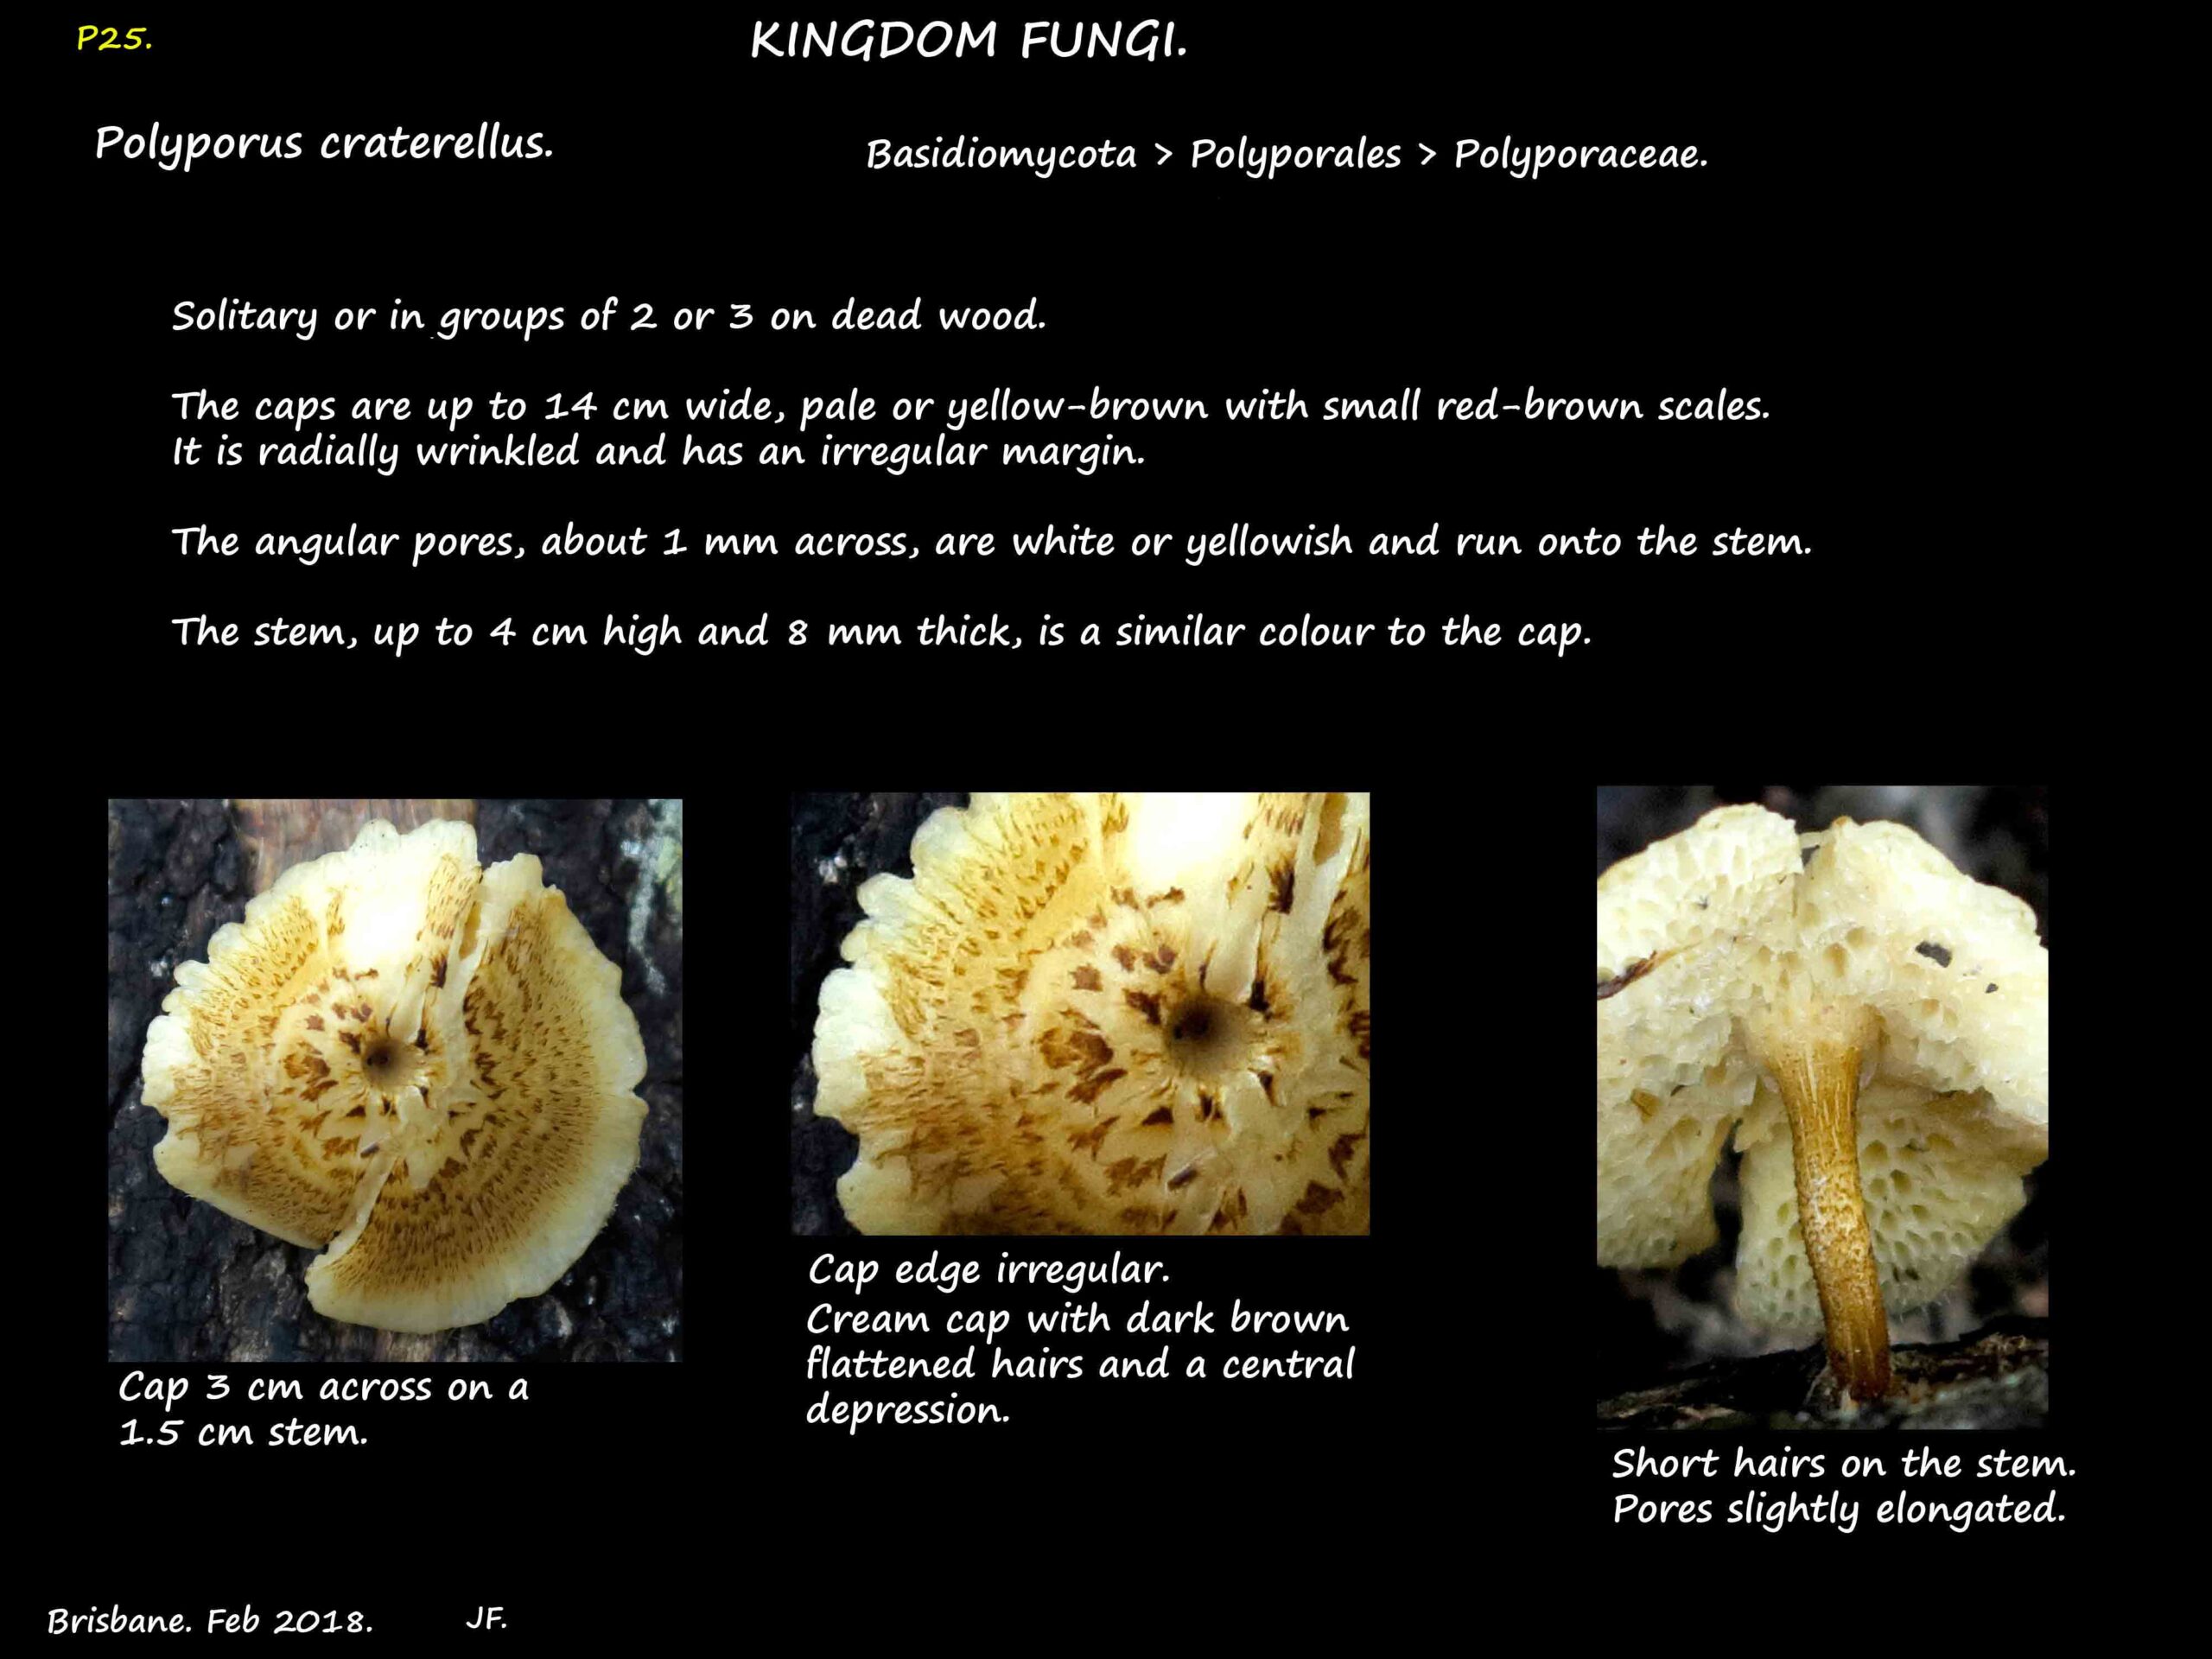 3 Polyporus craterellus mushroom